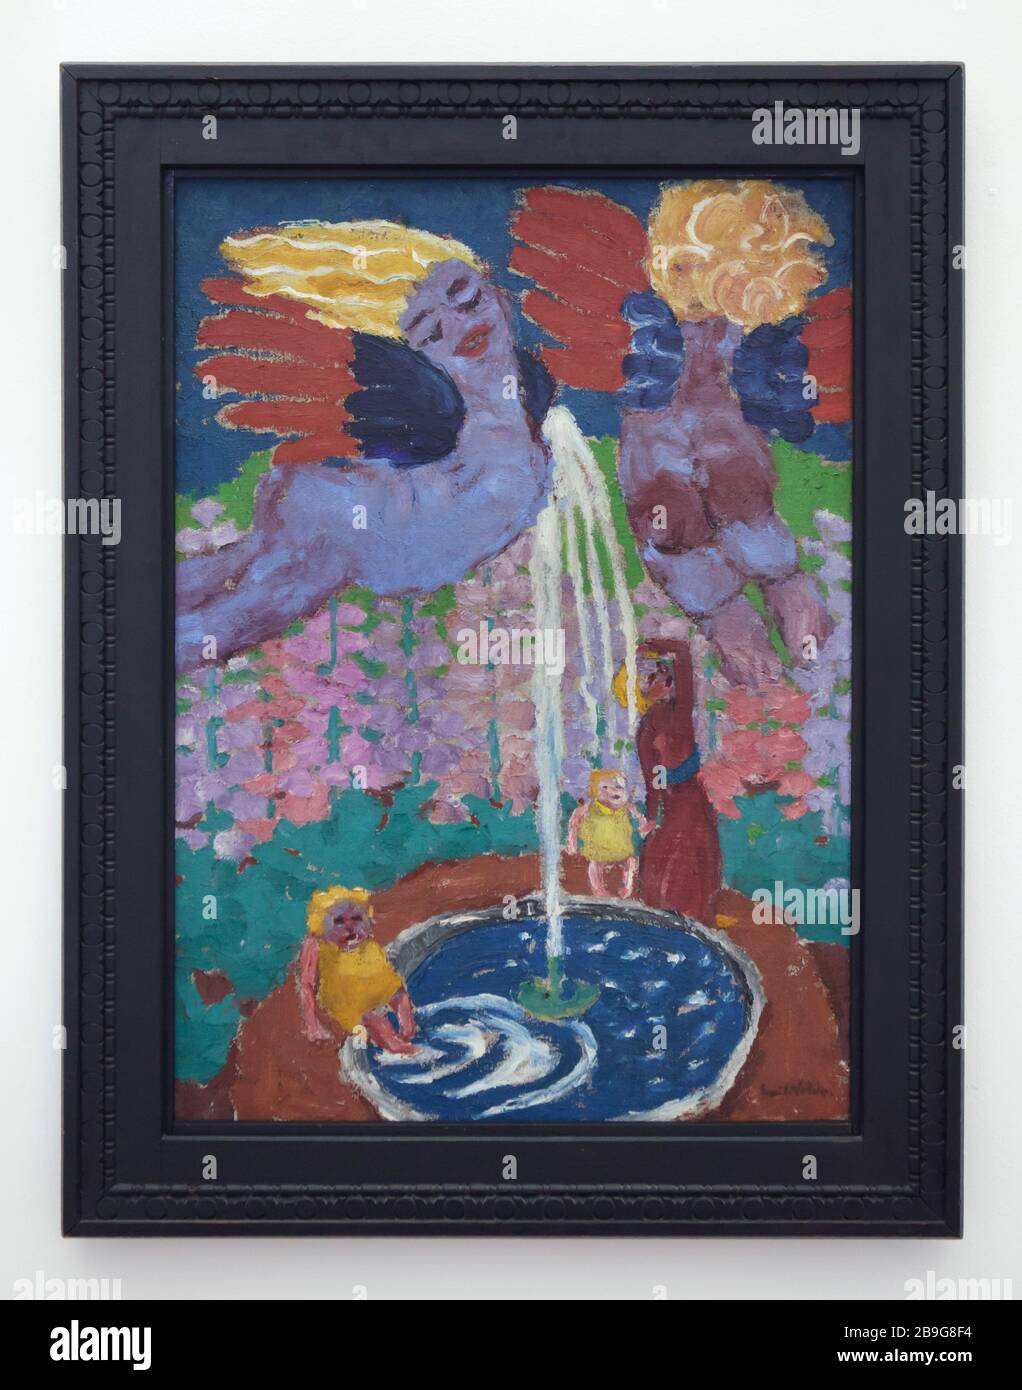 Pintura 'Fuente' del pintor expresionista alemán Emil Nolde (1916) en la Staatliche Kunsthalle Karlsruhe (Galería de Arte Estatal) en Karlsruhe, Baden-Württemberg, Alemania. Foto de stock